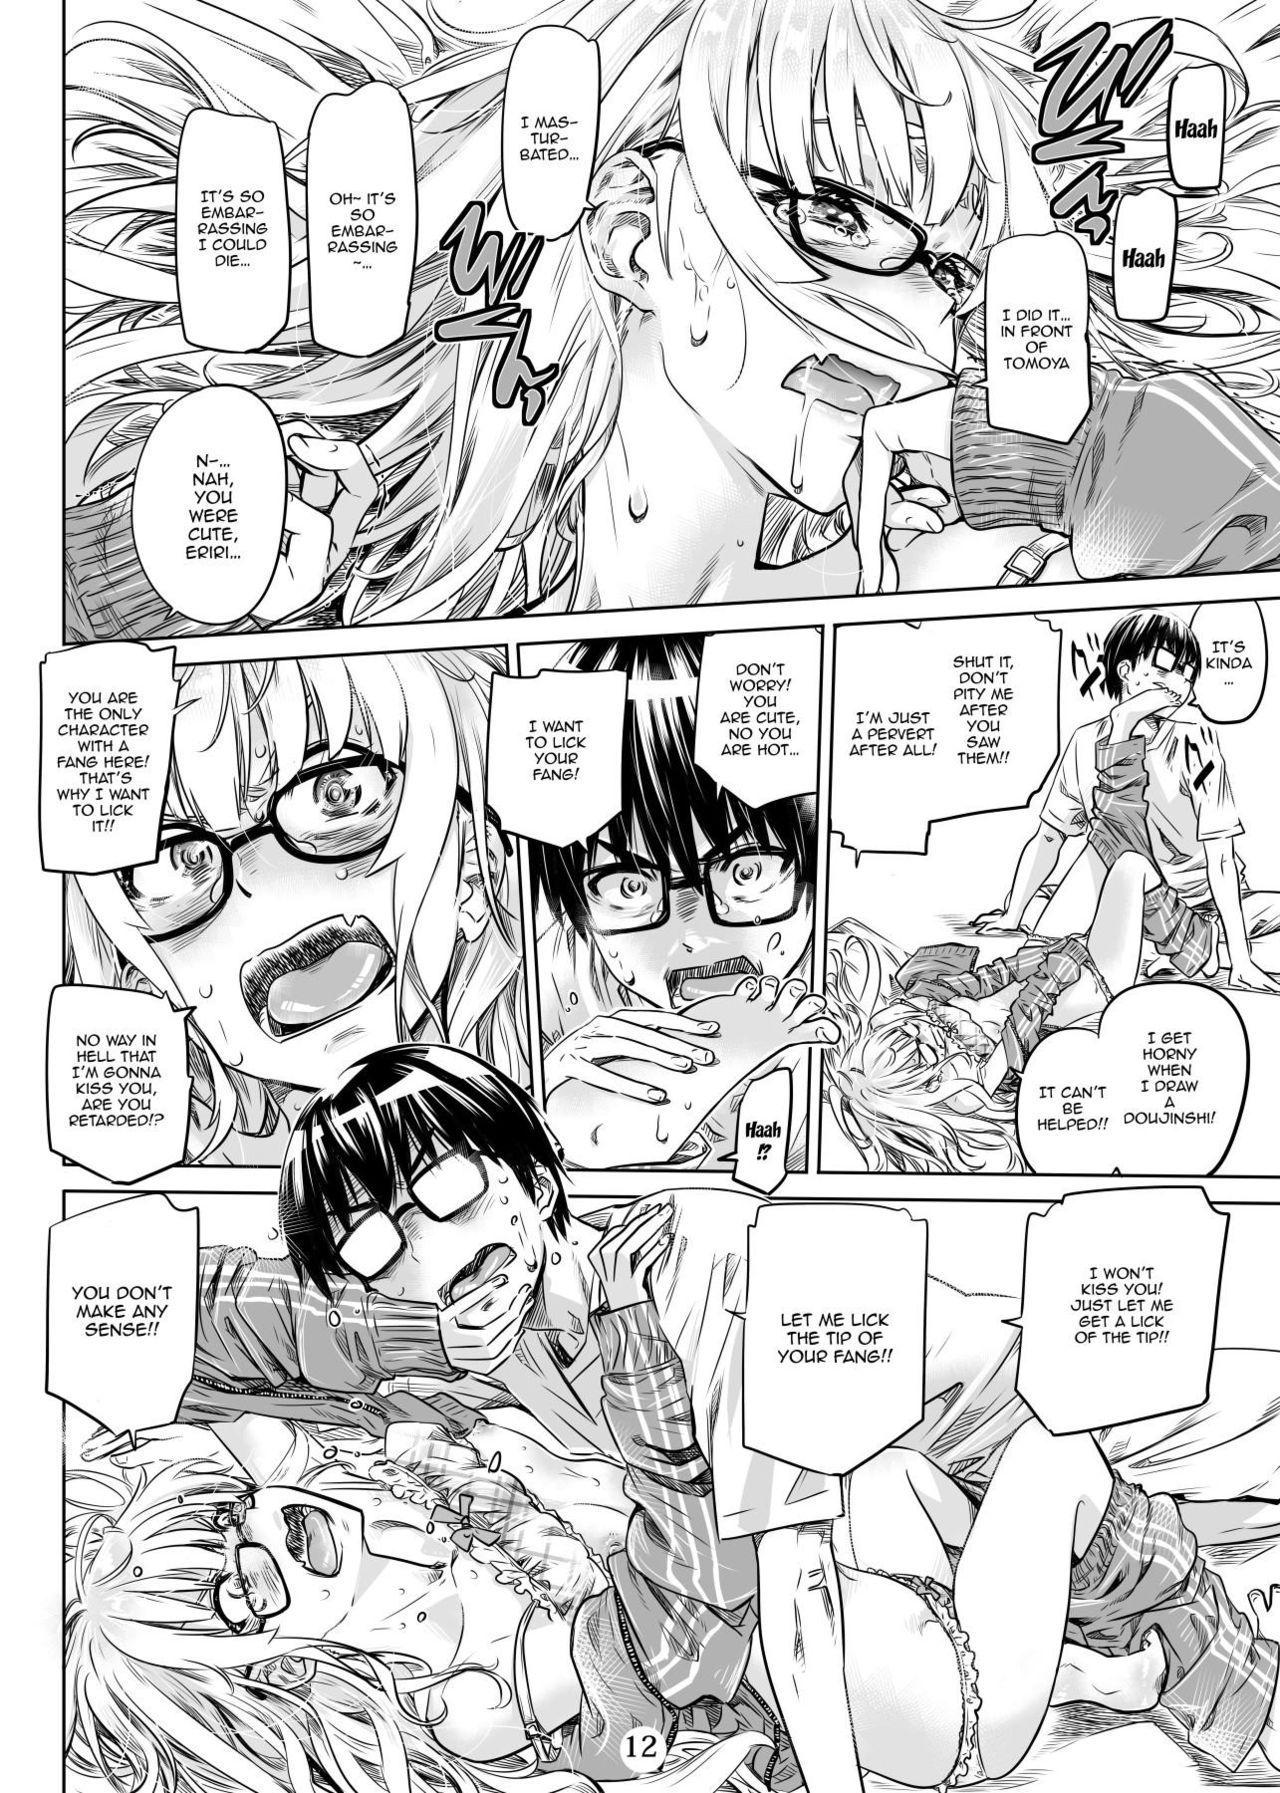 Pussy Orgasm Saenai Ero Doujin Sensei no Kudokikata - Saenai heroine no sodatekata Bj - Page 11